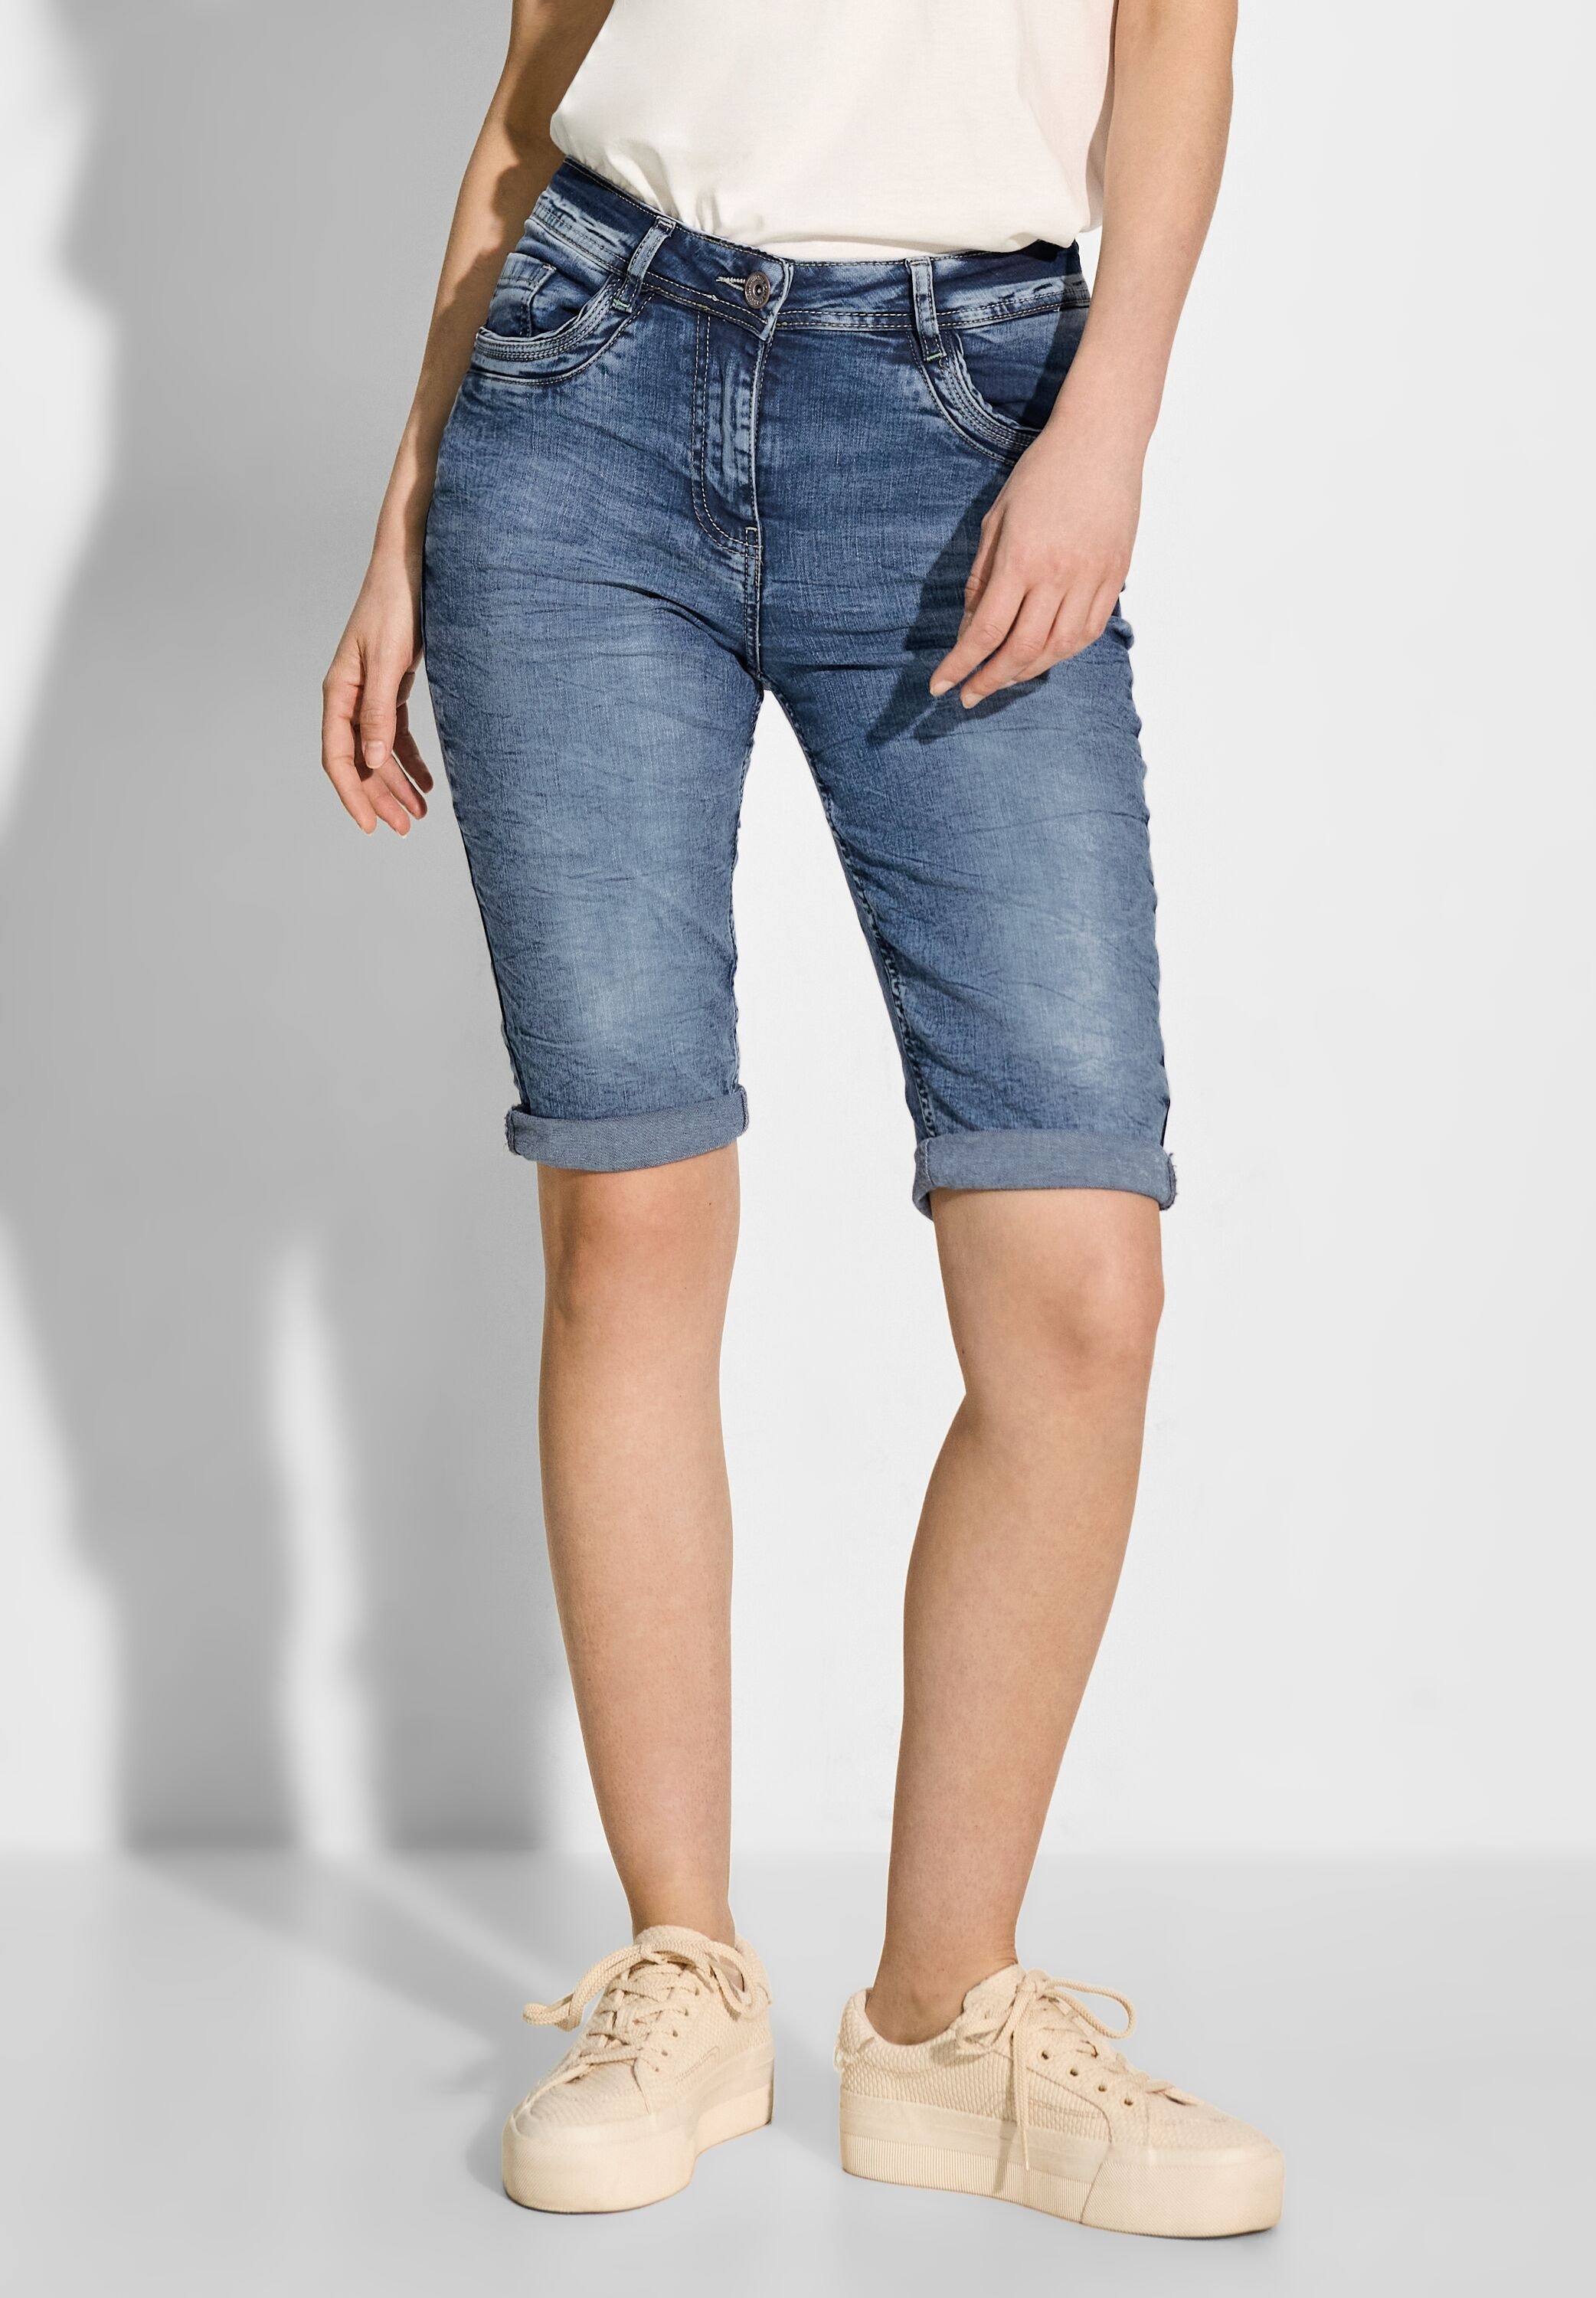 Cecil Bermudas "Toronto", Jeans Shorts mit dekorativen Nähten